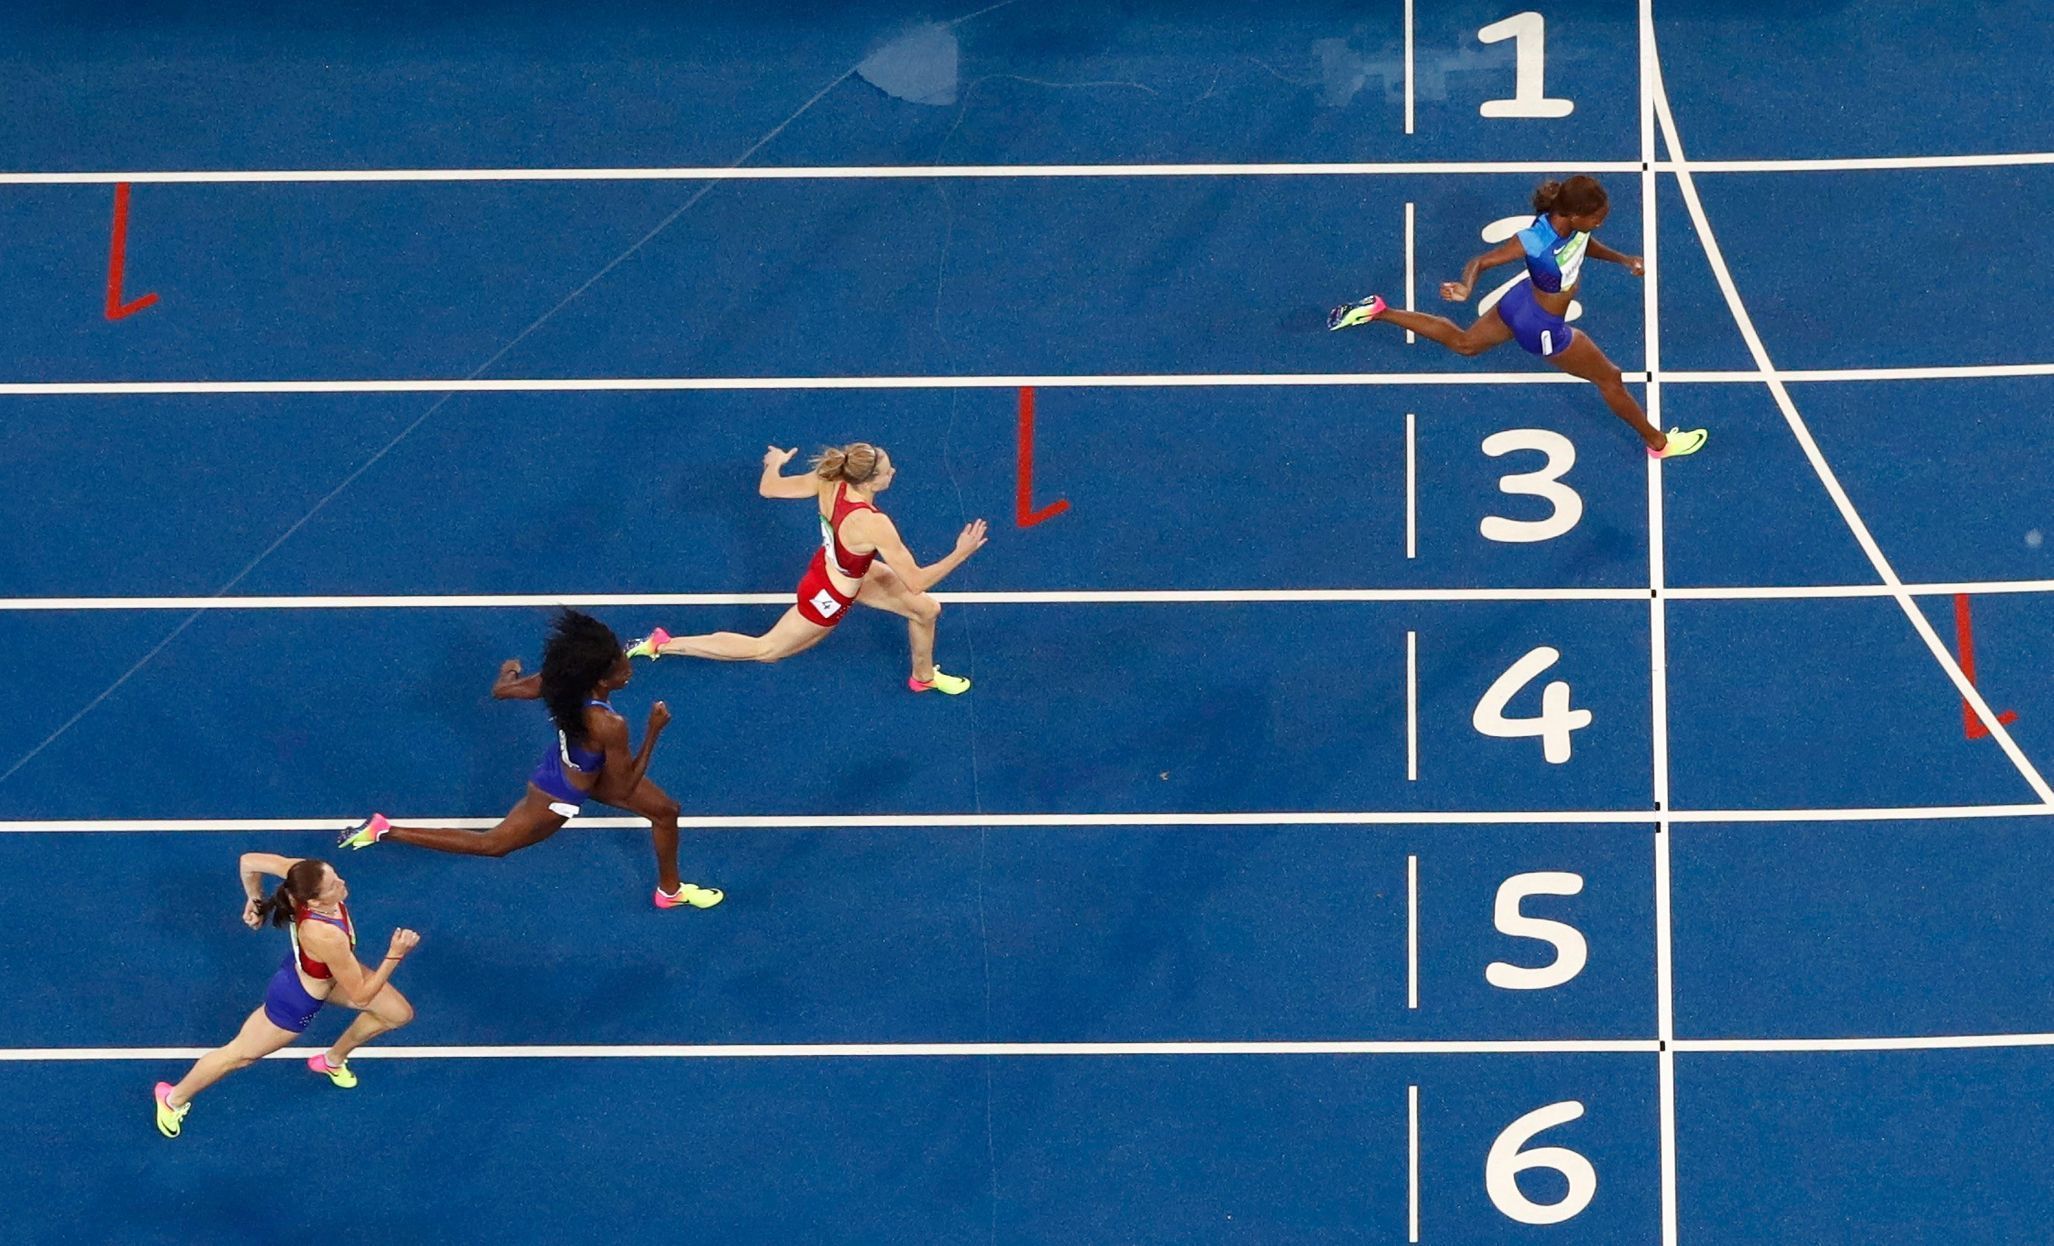 OH 2016, atletika-400 m př. Ž